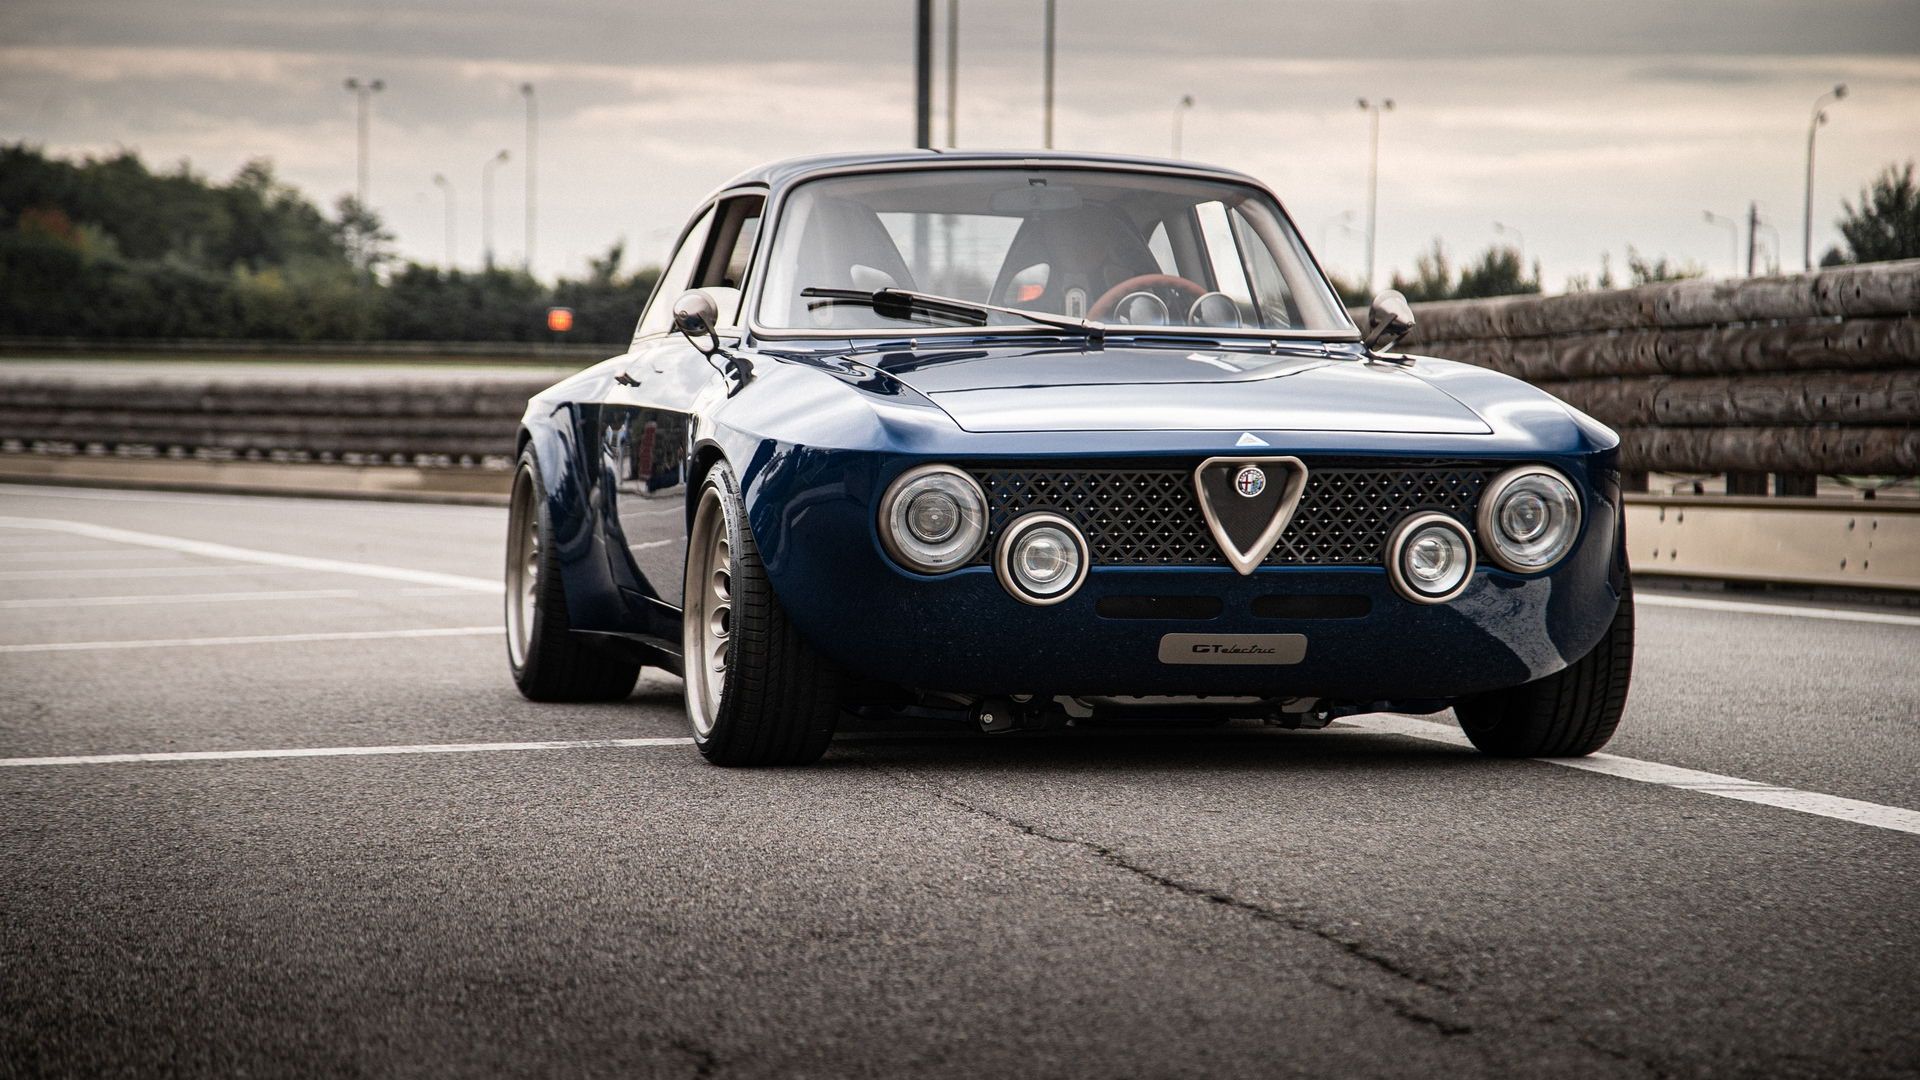 مرجع متخصصين ايران نماي جلو خودروي الكتريكي آلفا رومئو جوليا / Alfa Romeo Giulia GTA آبي رنگ در جاده